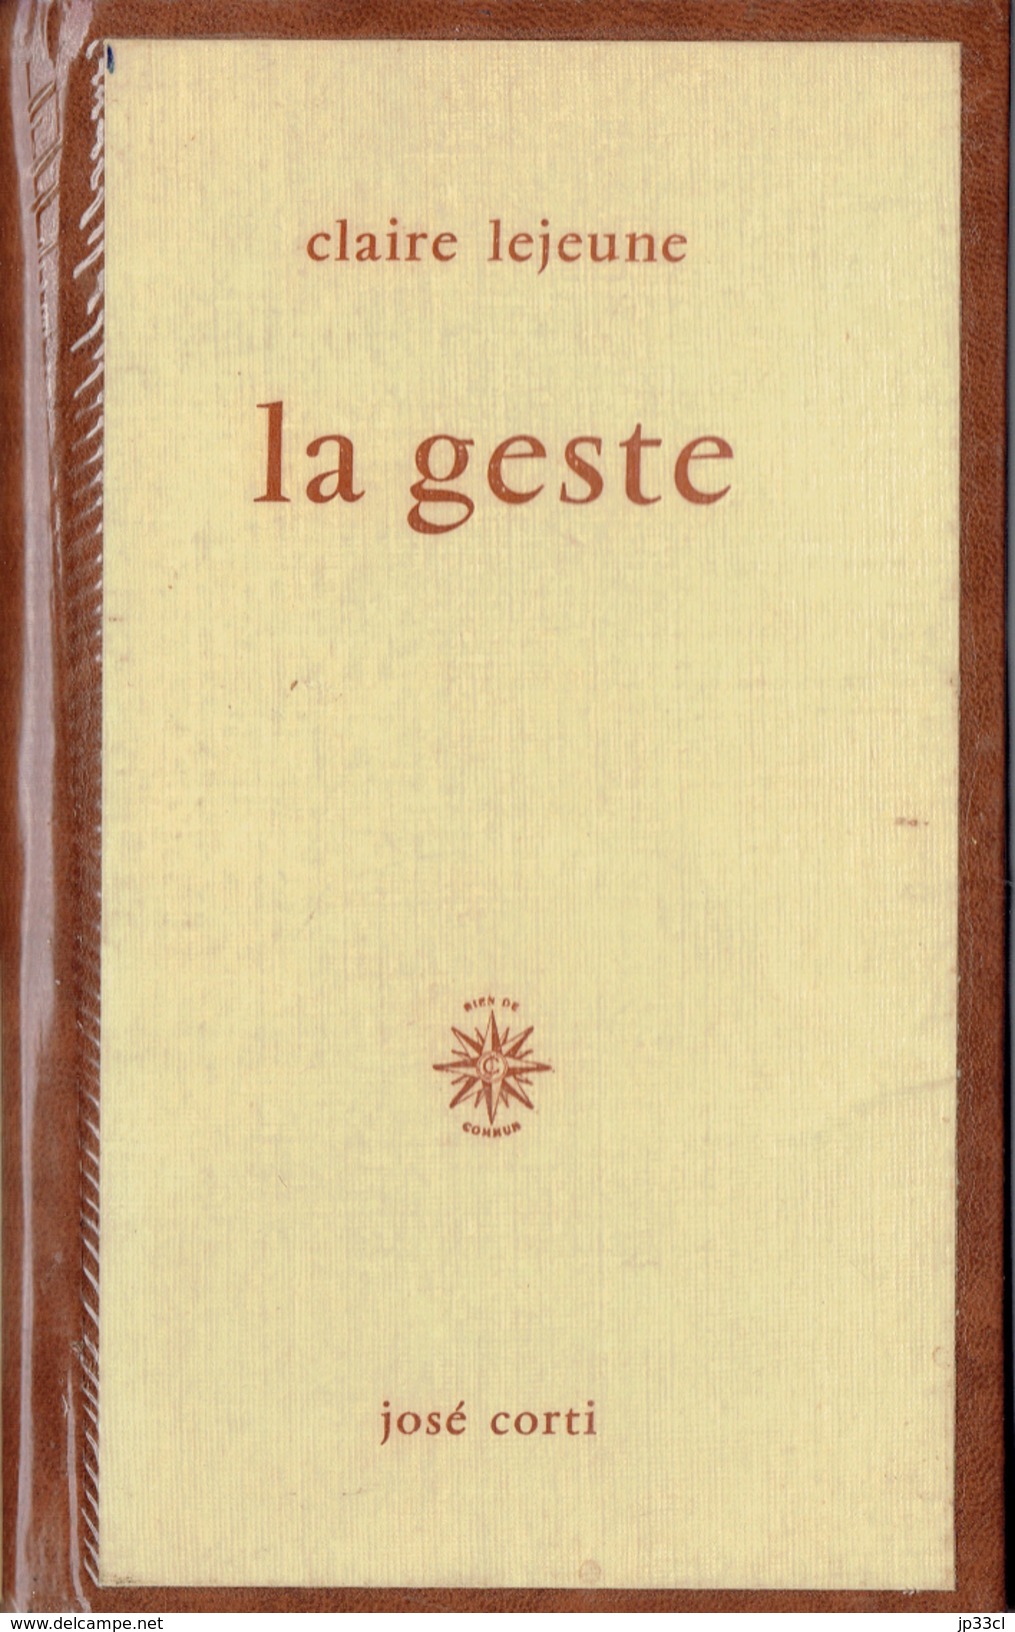 LA GESTE Par Claire Lejeune, José Corti, Paris, 1966, 88 Pages - Franse Schrijvers